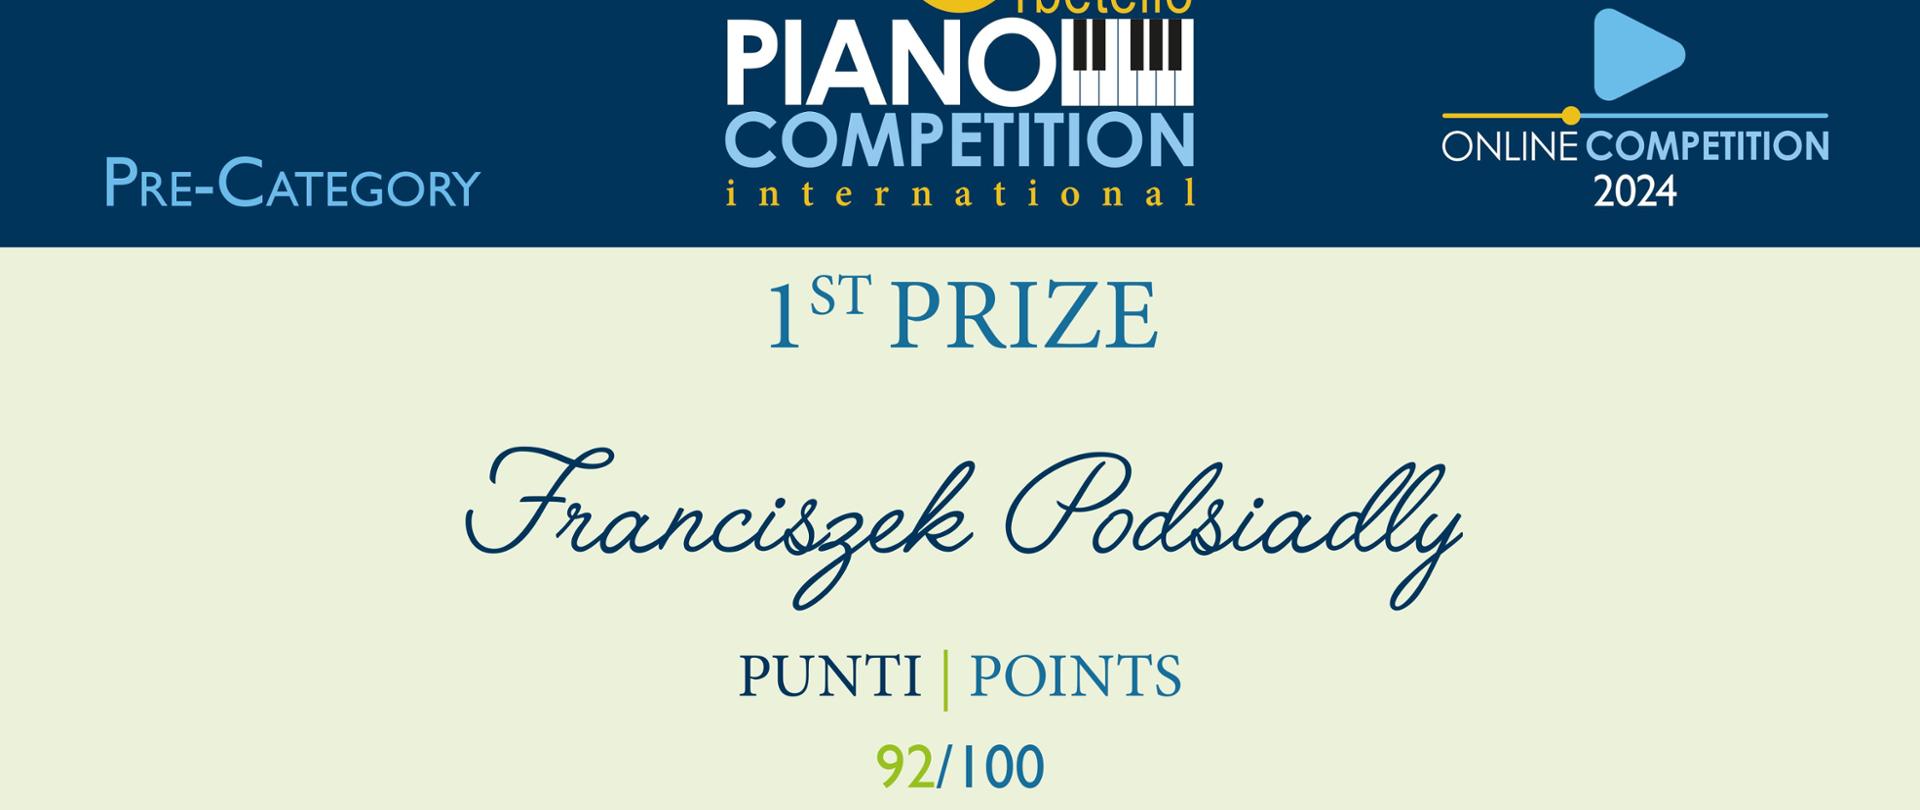 Dyplom pierwszego miejsca w kategorii wstępnej otrzymał Franciszek Podsiadły w Międzynarodowym Konkursie Pianistycznym „Orbetello” we Włoszech w dniach od pierwszego do dwudziestego kwietnia dwa tysiące dwudziestego czwartego roku w formie online.